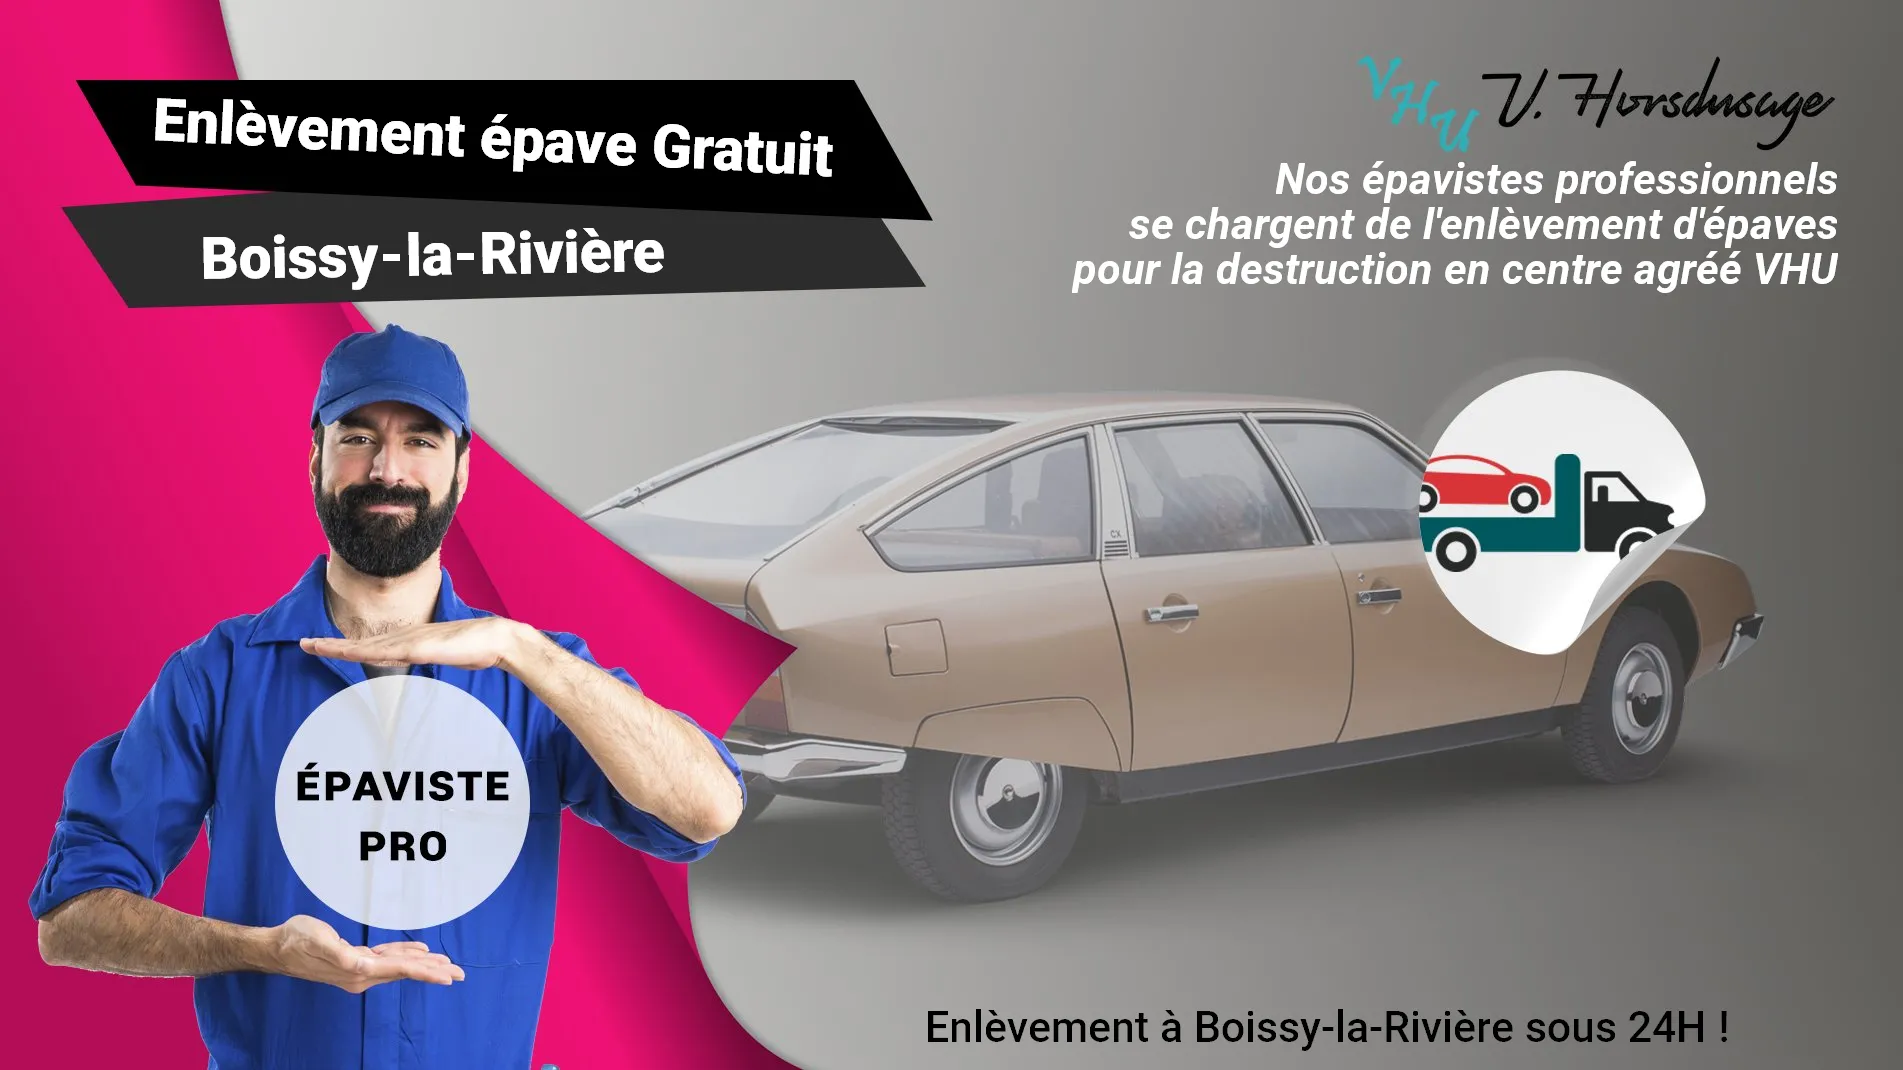 Pour un enlèvement gratuit à Boissy-la-Rivière, contactez nos épavistes agréé VHU